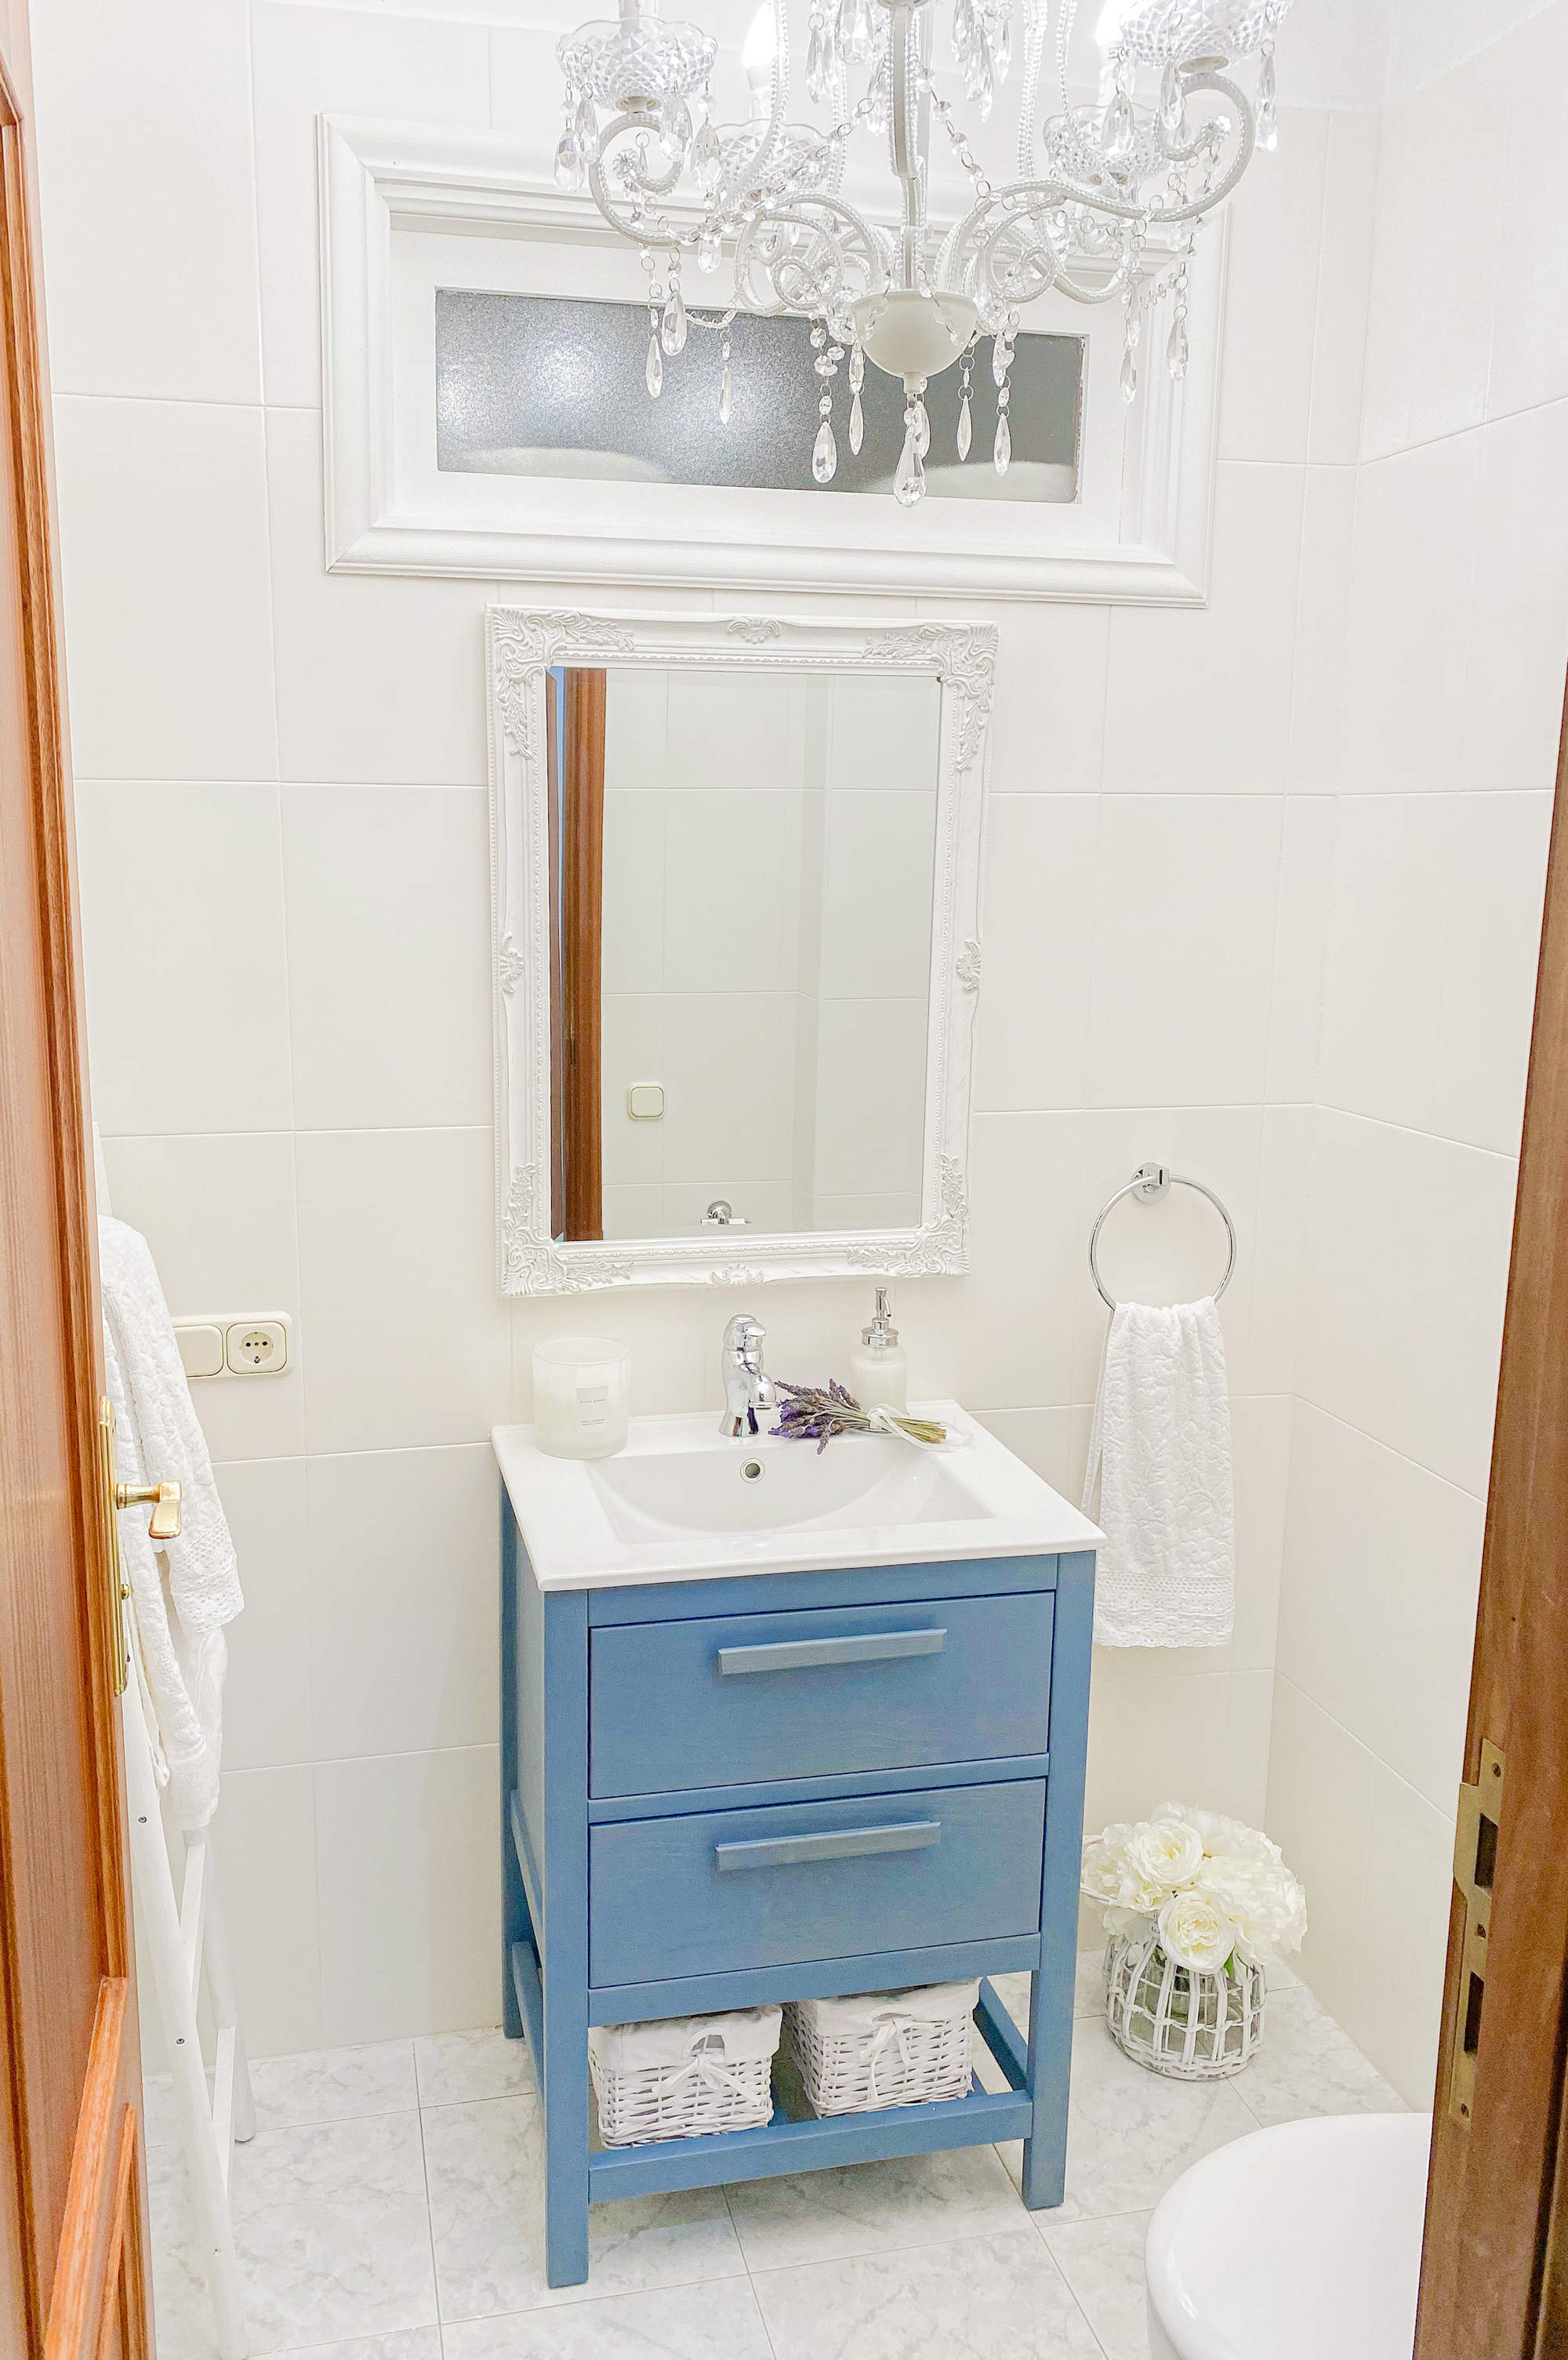 Aseo en tonos blancos con mueble de lavabo en azul.